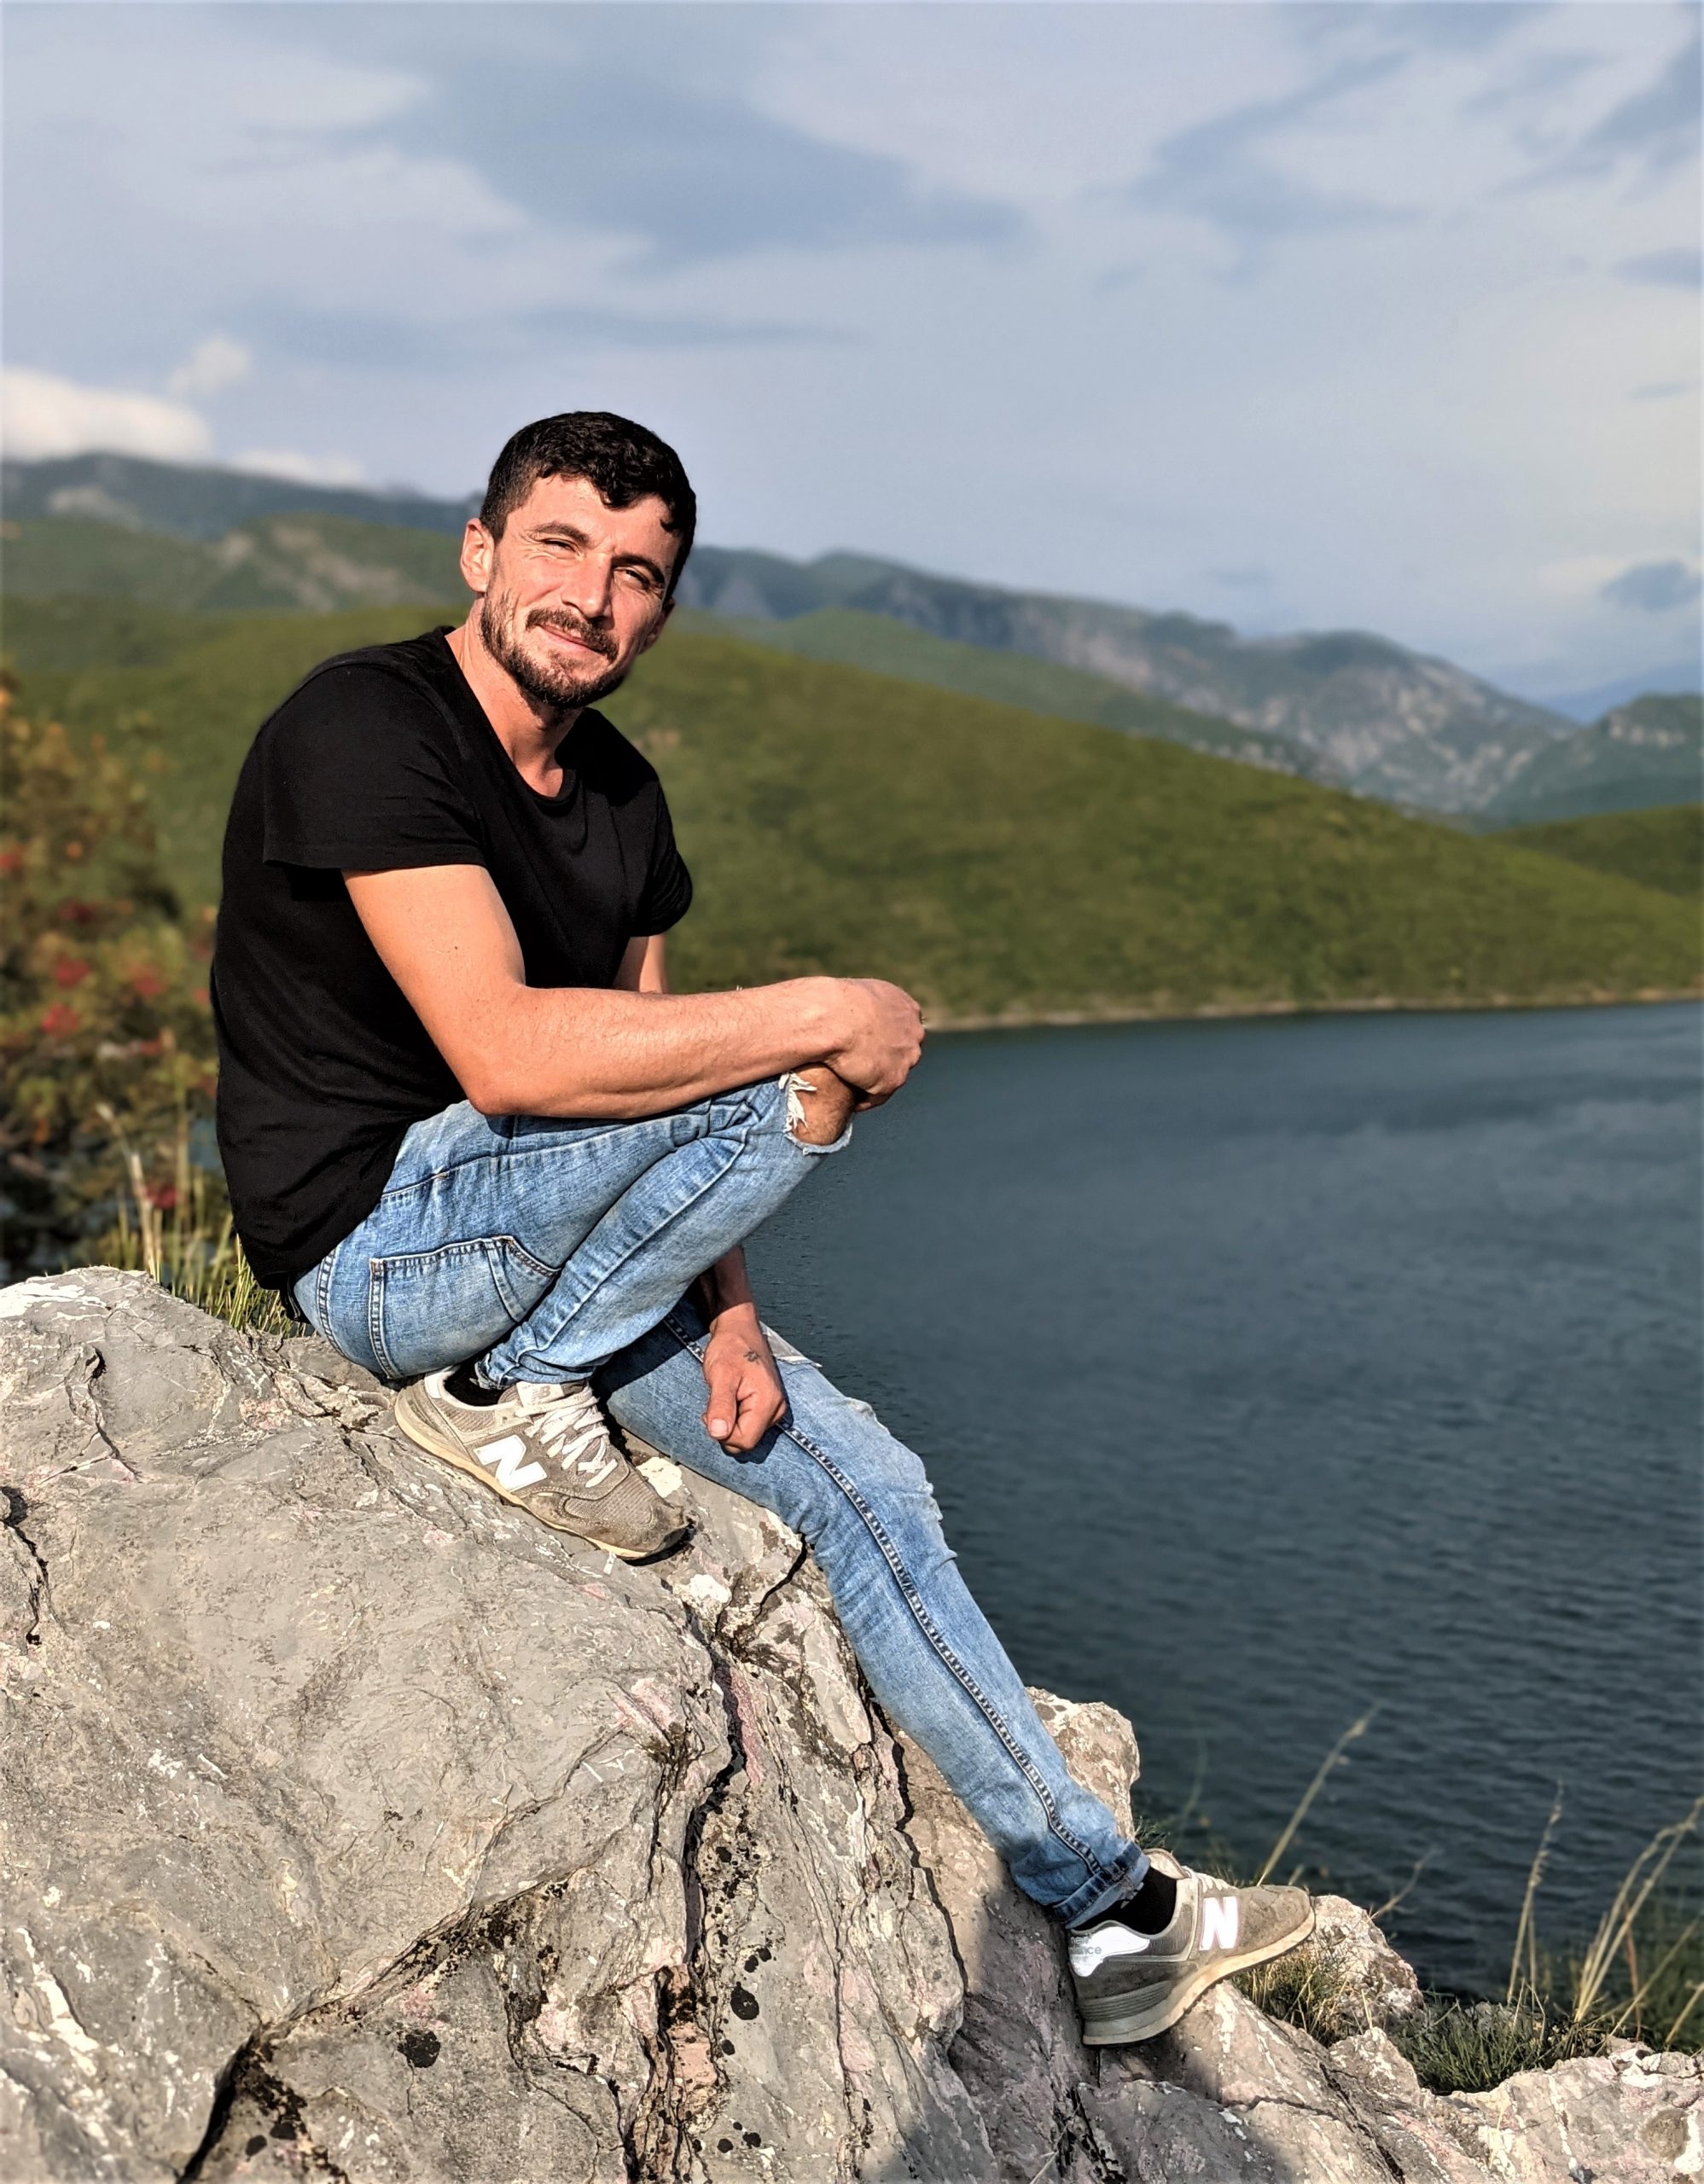 Eduard, capitaine du bateau, sur l'île abandonnée de Shurdhah, en Albanie, devant un beau paysage